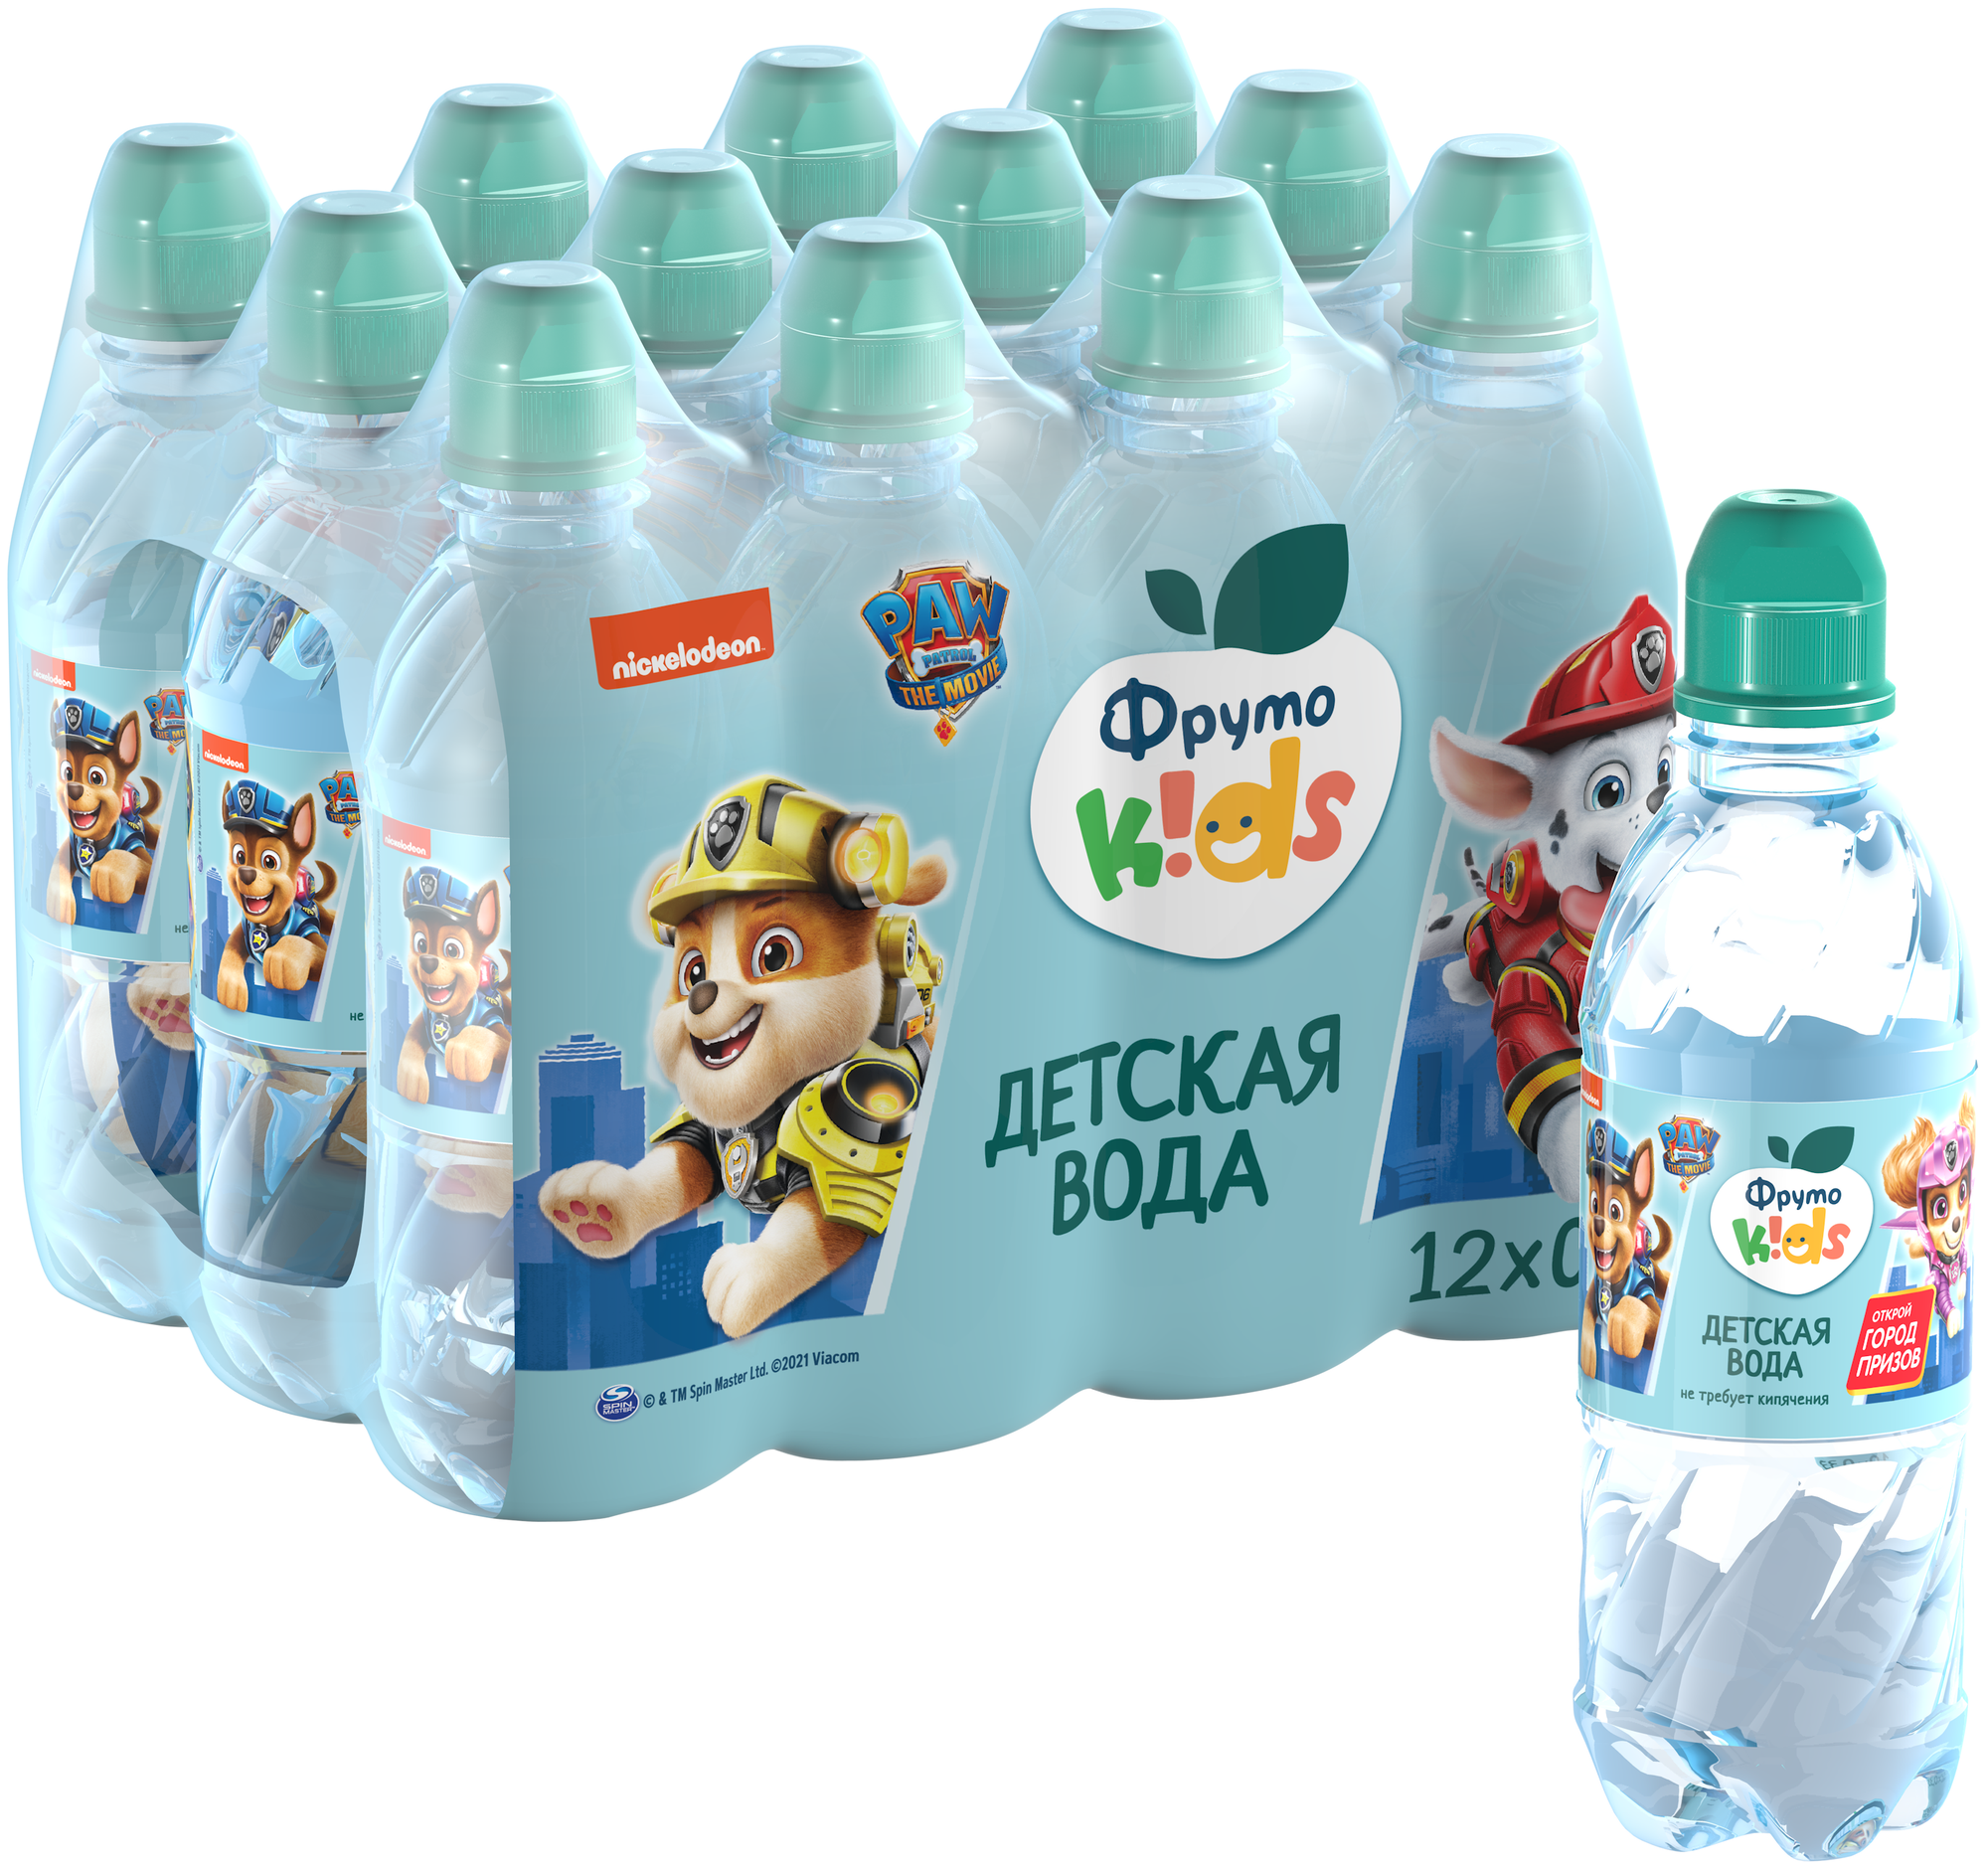 Спайка Вода детская питьевая ФрутоKids, 0,33л (12 шт)